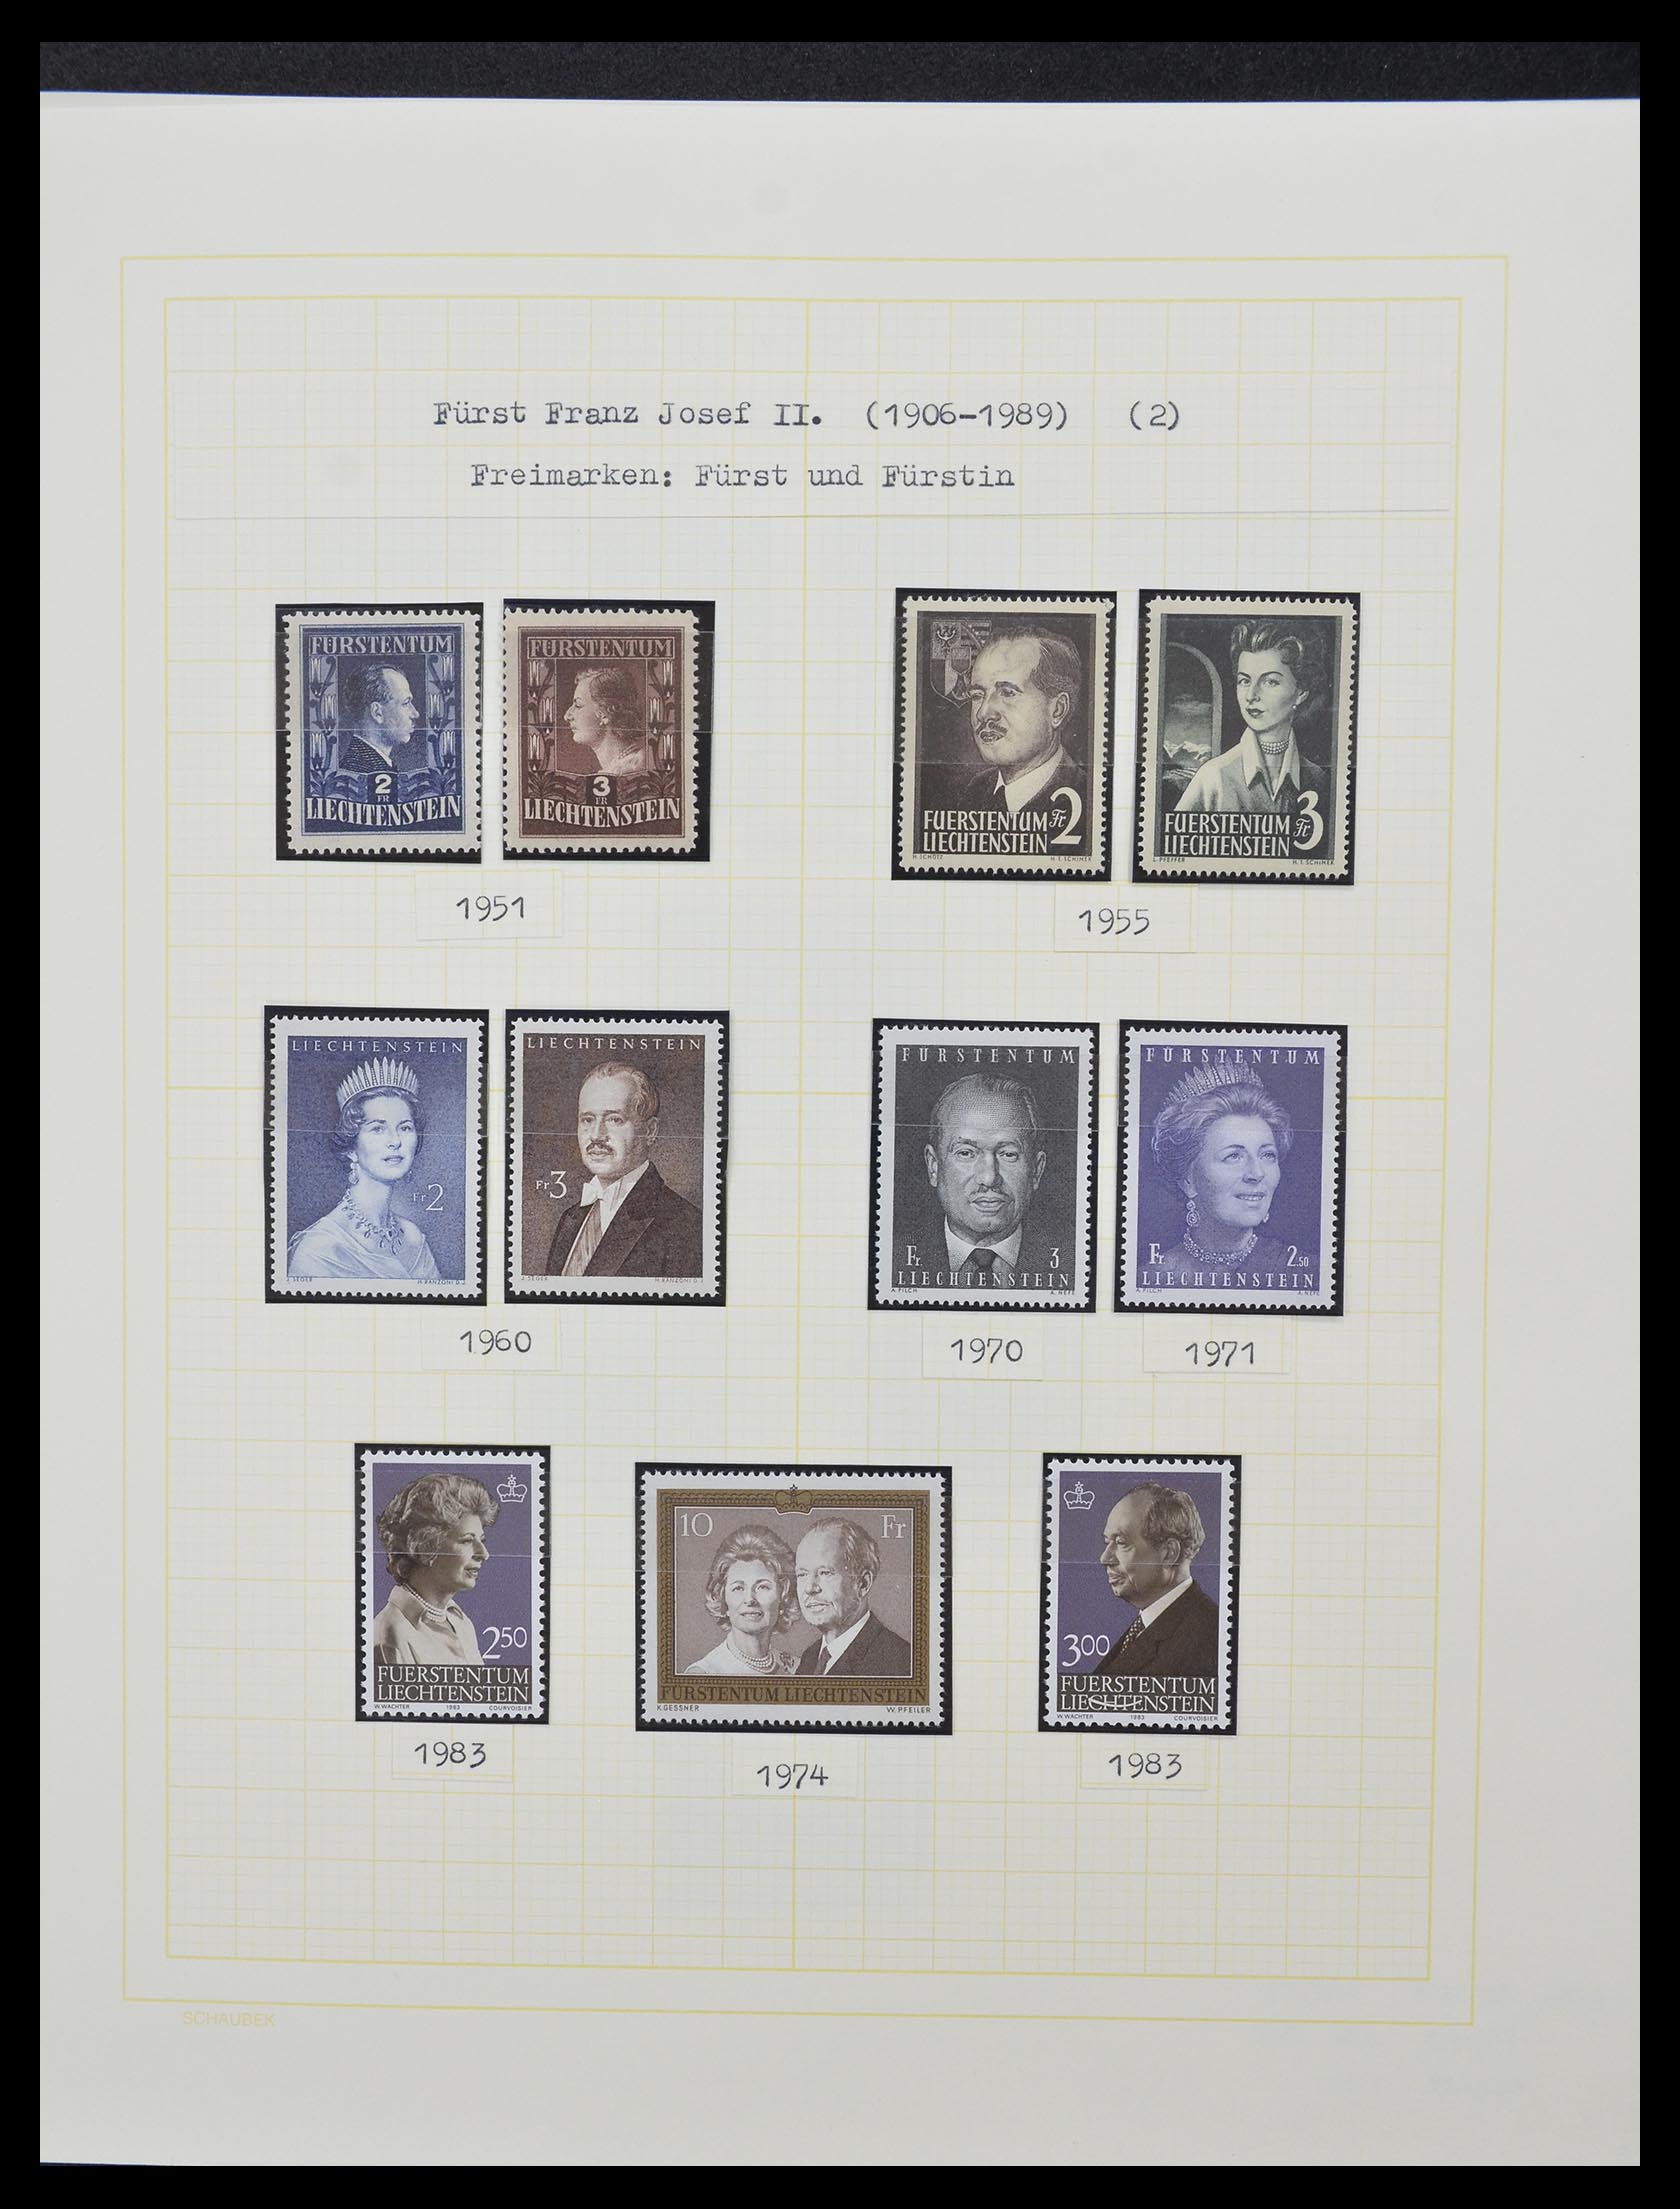 33138 017 - Stamp collection 33138 Liechtenstein 1912-2002.